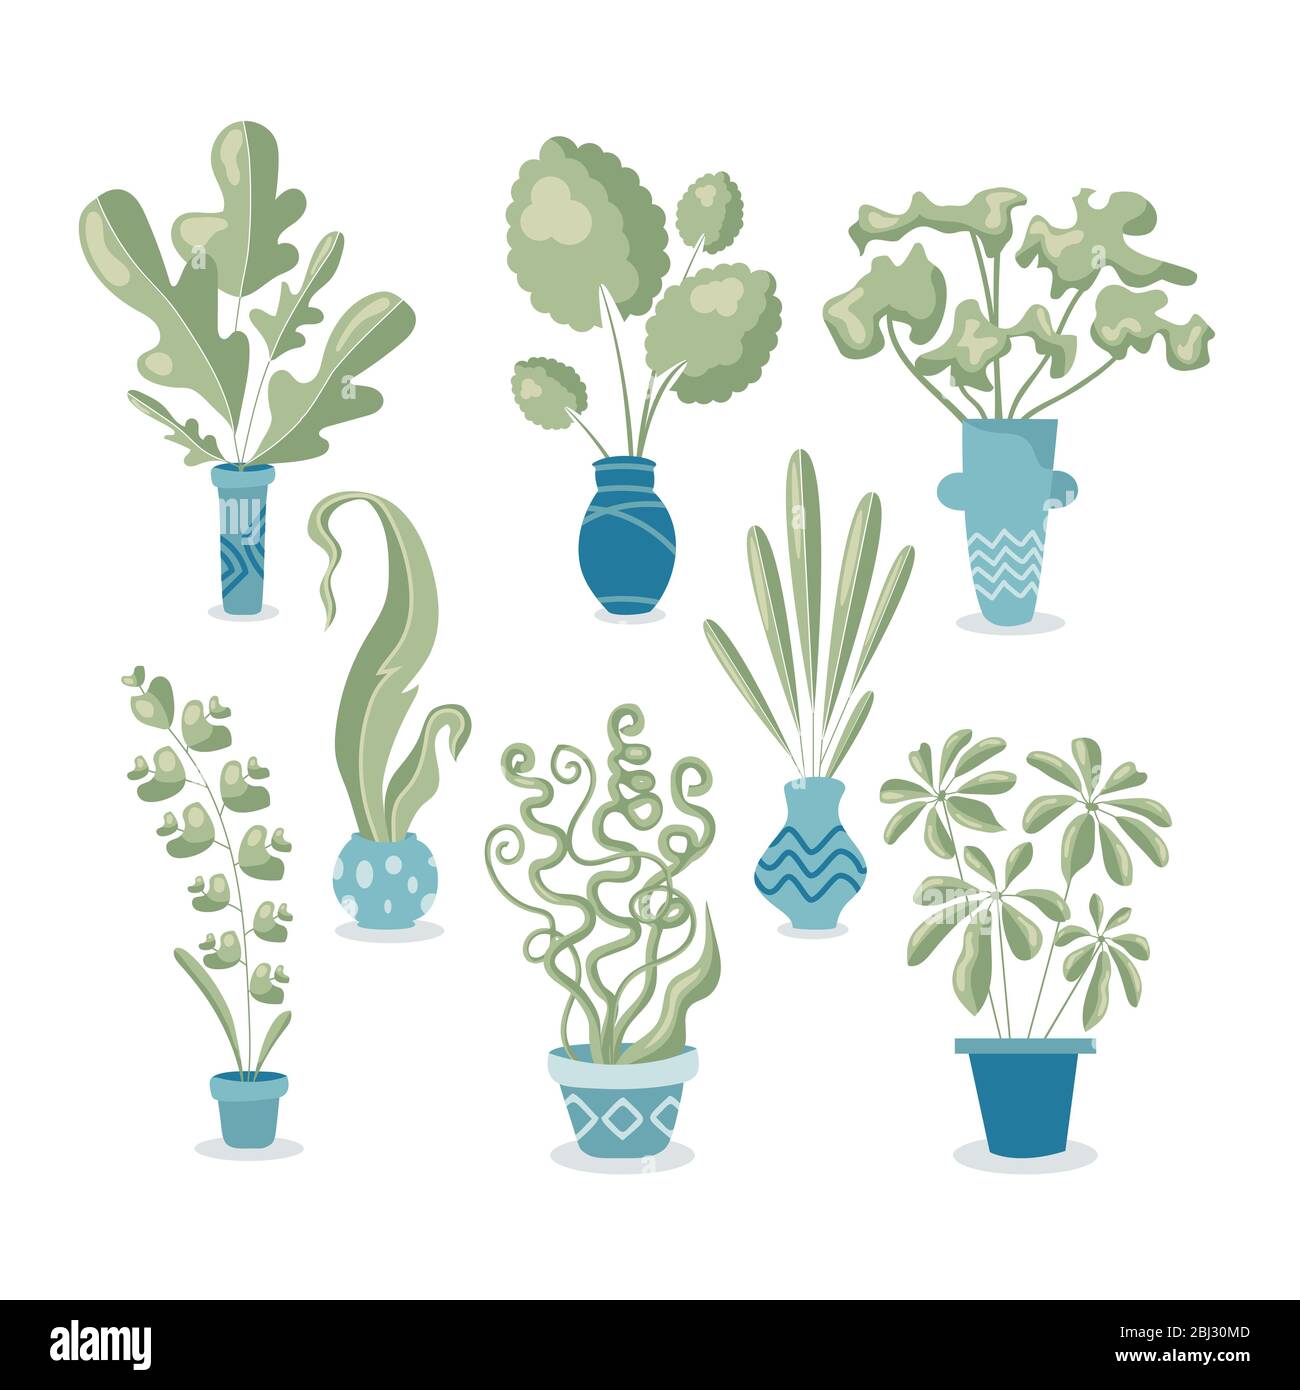 Set von 8 verschiedenen Hauspflanzen in Töpfen. Altmodische Farben in flachem, modernem Stil. Handgefertigte Zeichnungen auf weißem Hintergrund isoliert. Stock Vektor